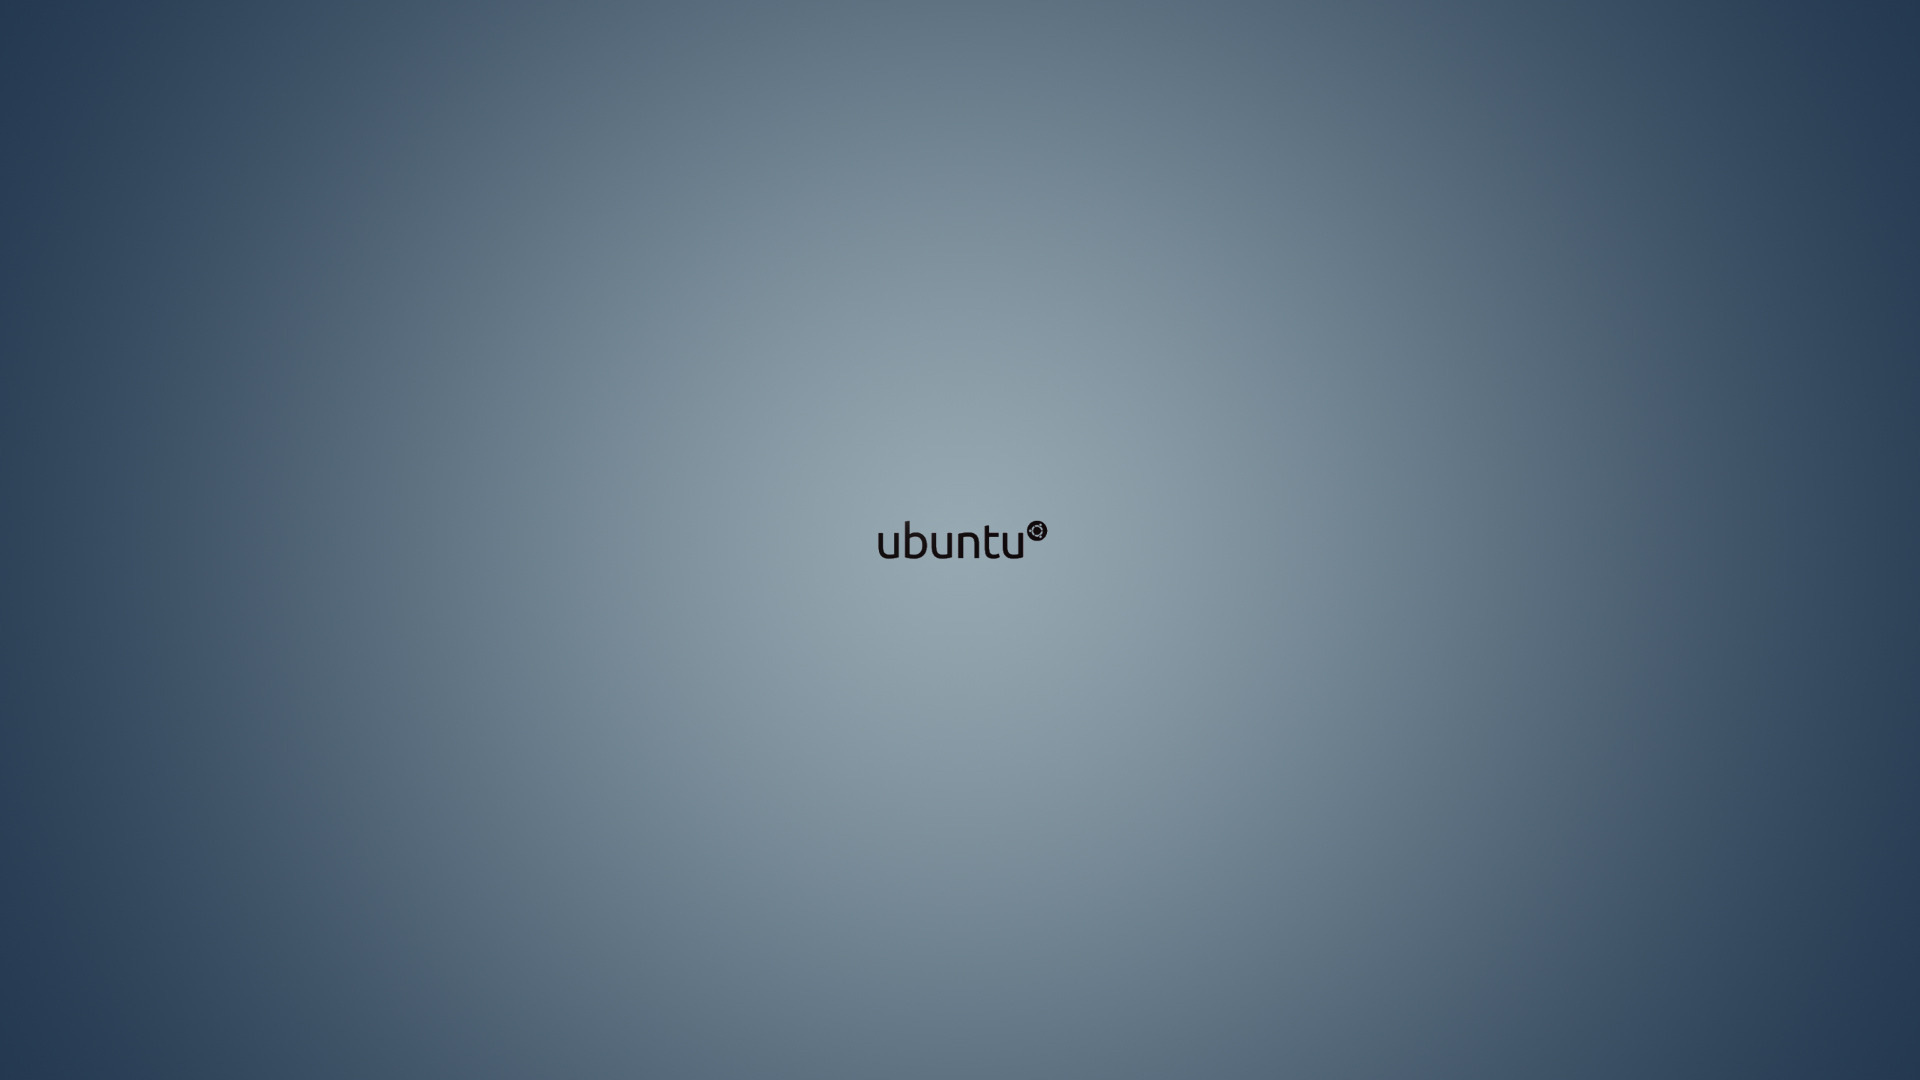 Ubuntu wallpapers: Hình nền Ubuntu độc đáo và sáng tạo sẽ làm bạn say mê ngay từ cái nhìn đầu tiên. Nhiều các tùy chọn đẹp mắt với các hình ảnh hiện đại và trang nhã. Đừng bỏ lỡ cơ hội để tải về những bức hình nền Ubuntu tuyệt đẹp này.